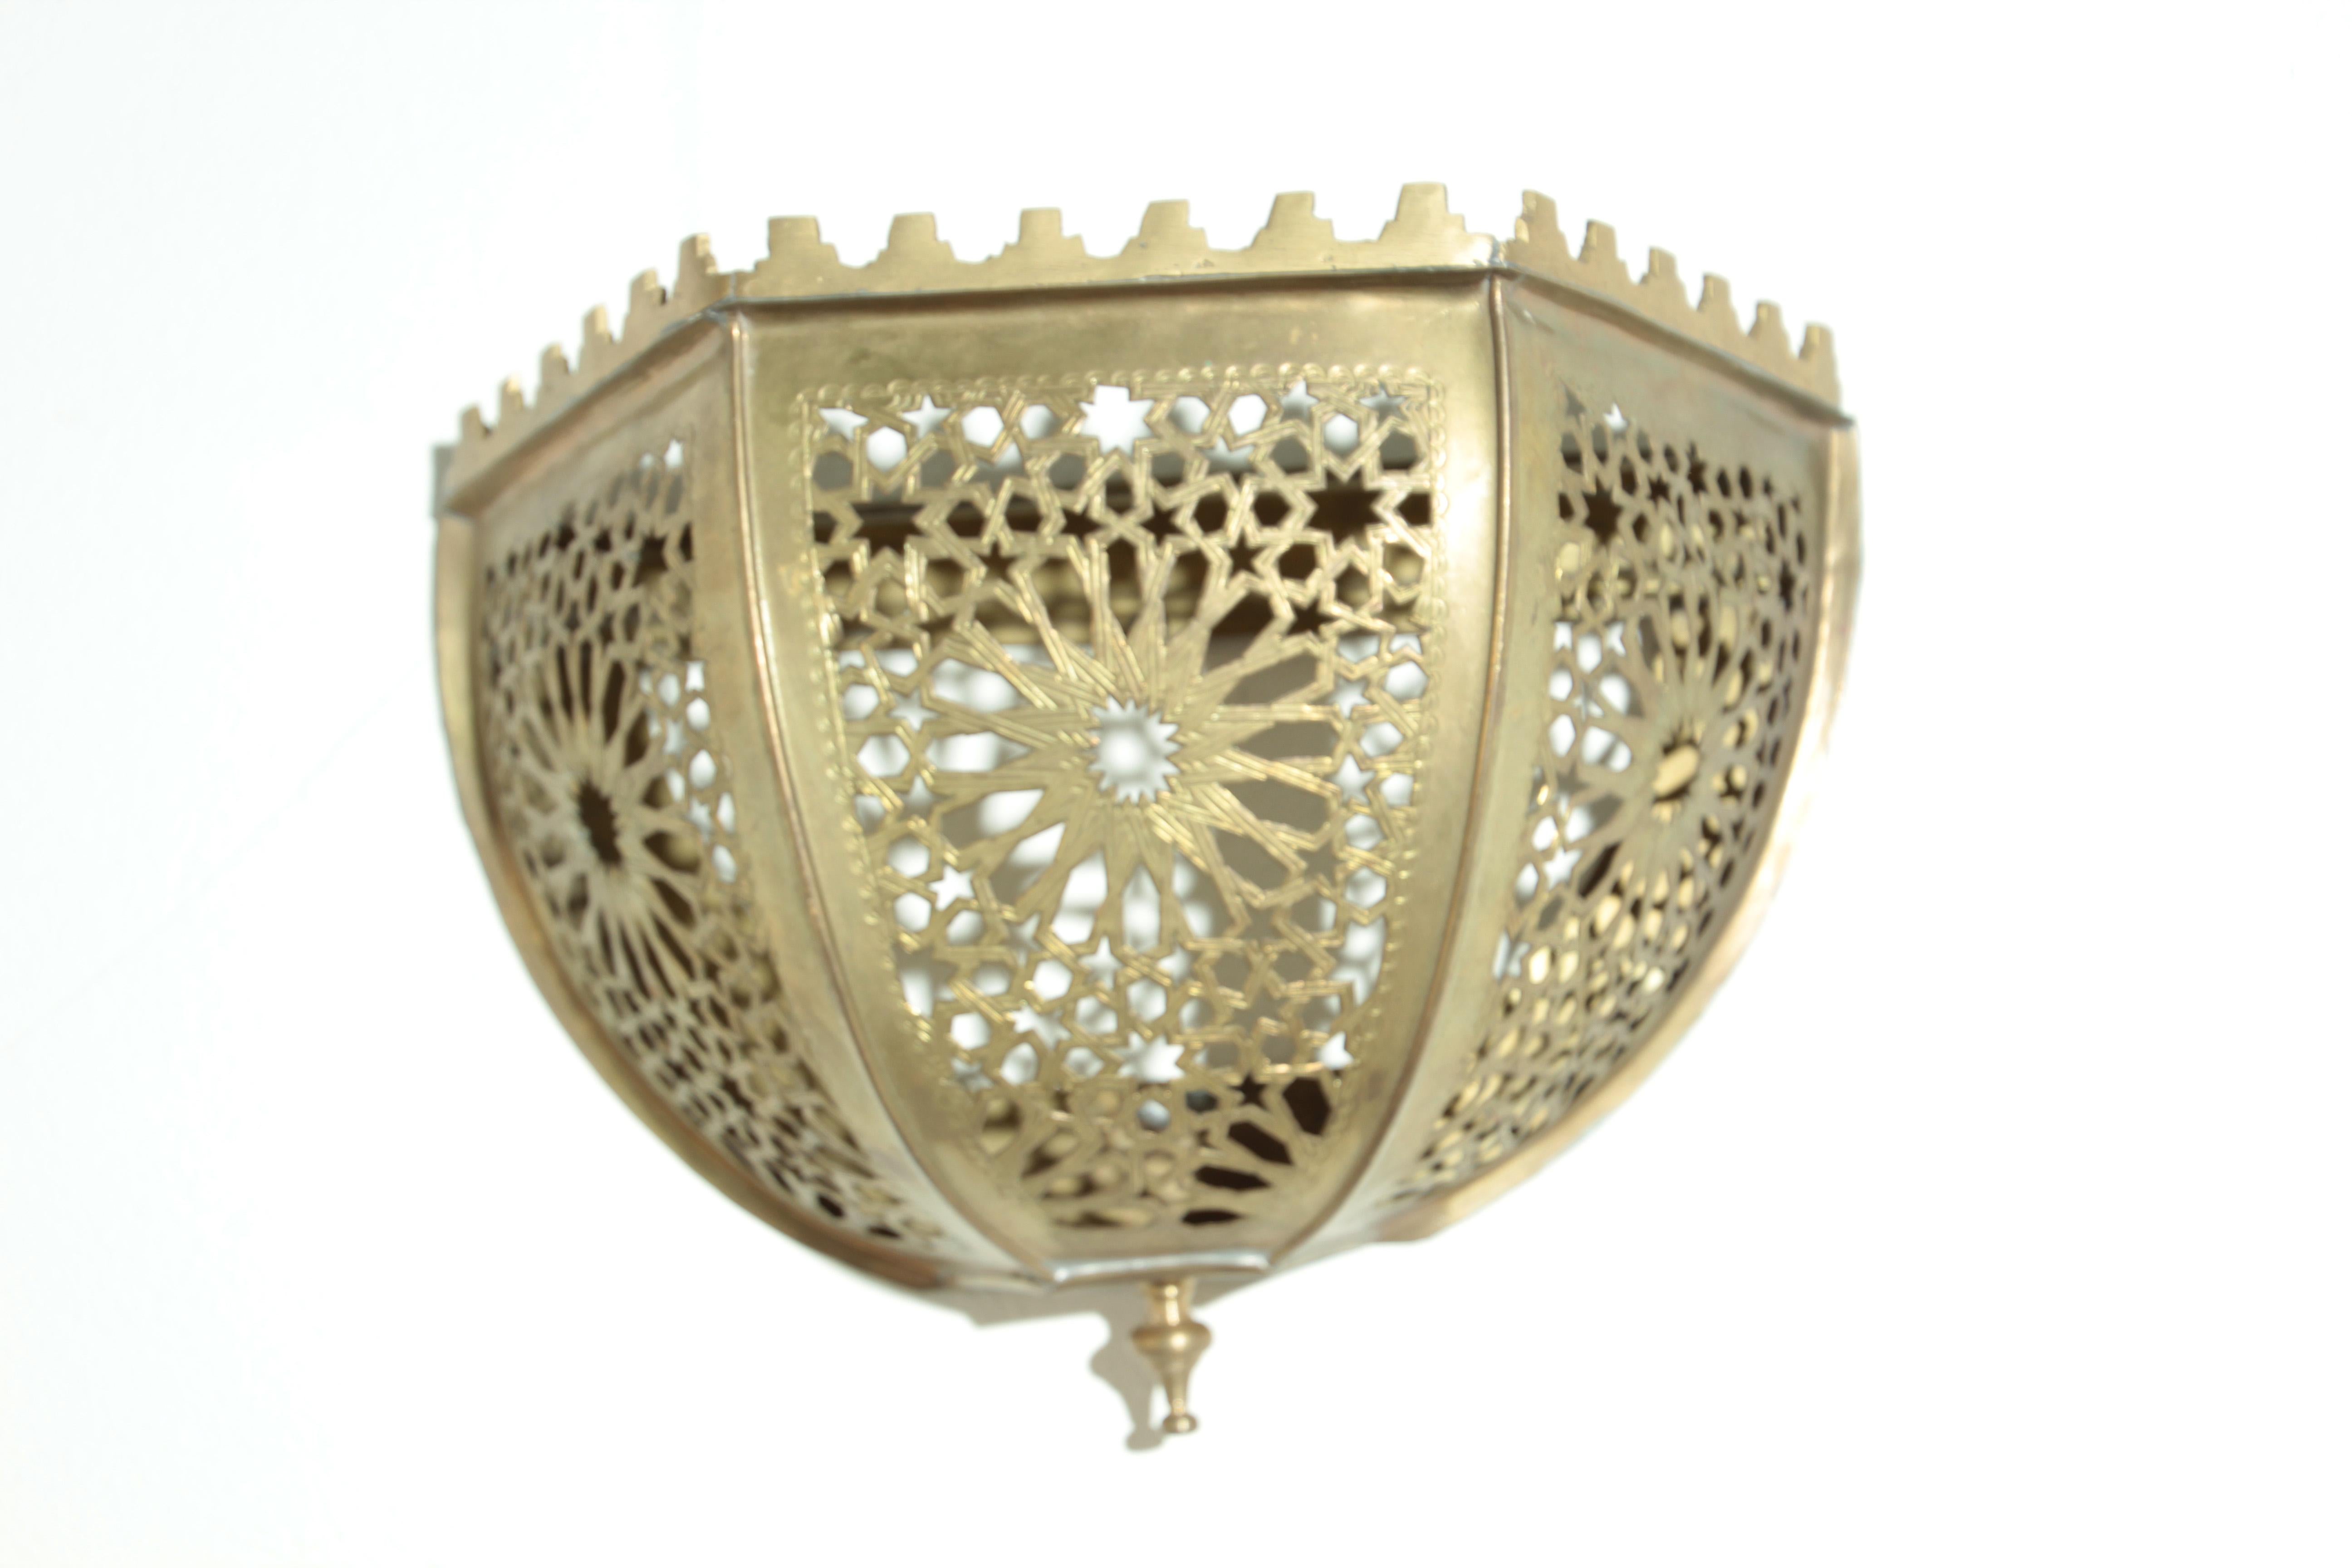 Marokkanisches Messing handgefertigtes Kunstwerk könnte als Wandlampenschirm verwendet werden.
Der Messingrahmen eignet sich perfekt für sanftes, subtiles Wandleuchterlicht.
Der Lampenschirm hat keinen elektrischen Anschluss.
Sie sehen toll aus über